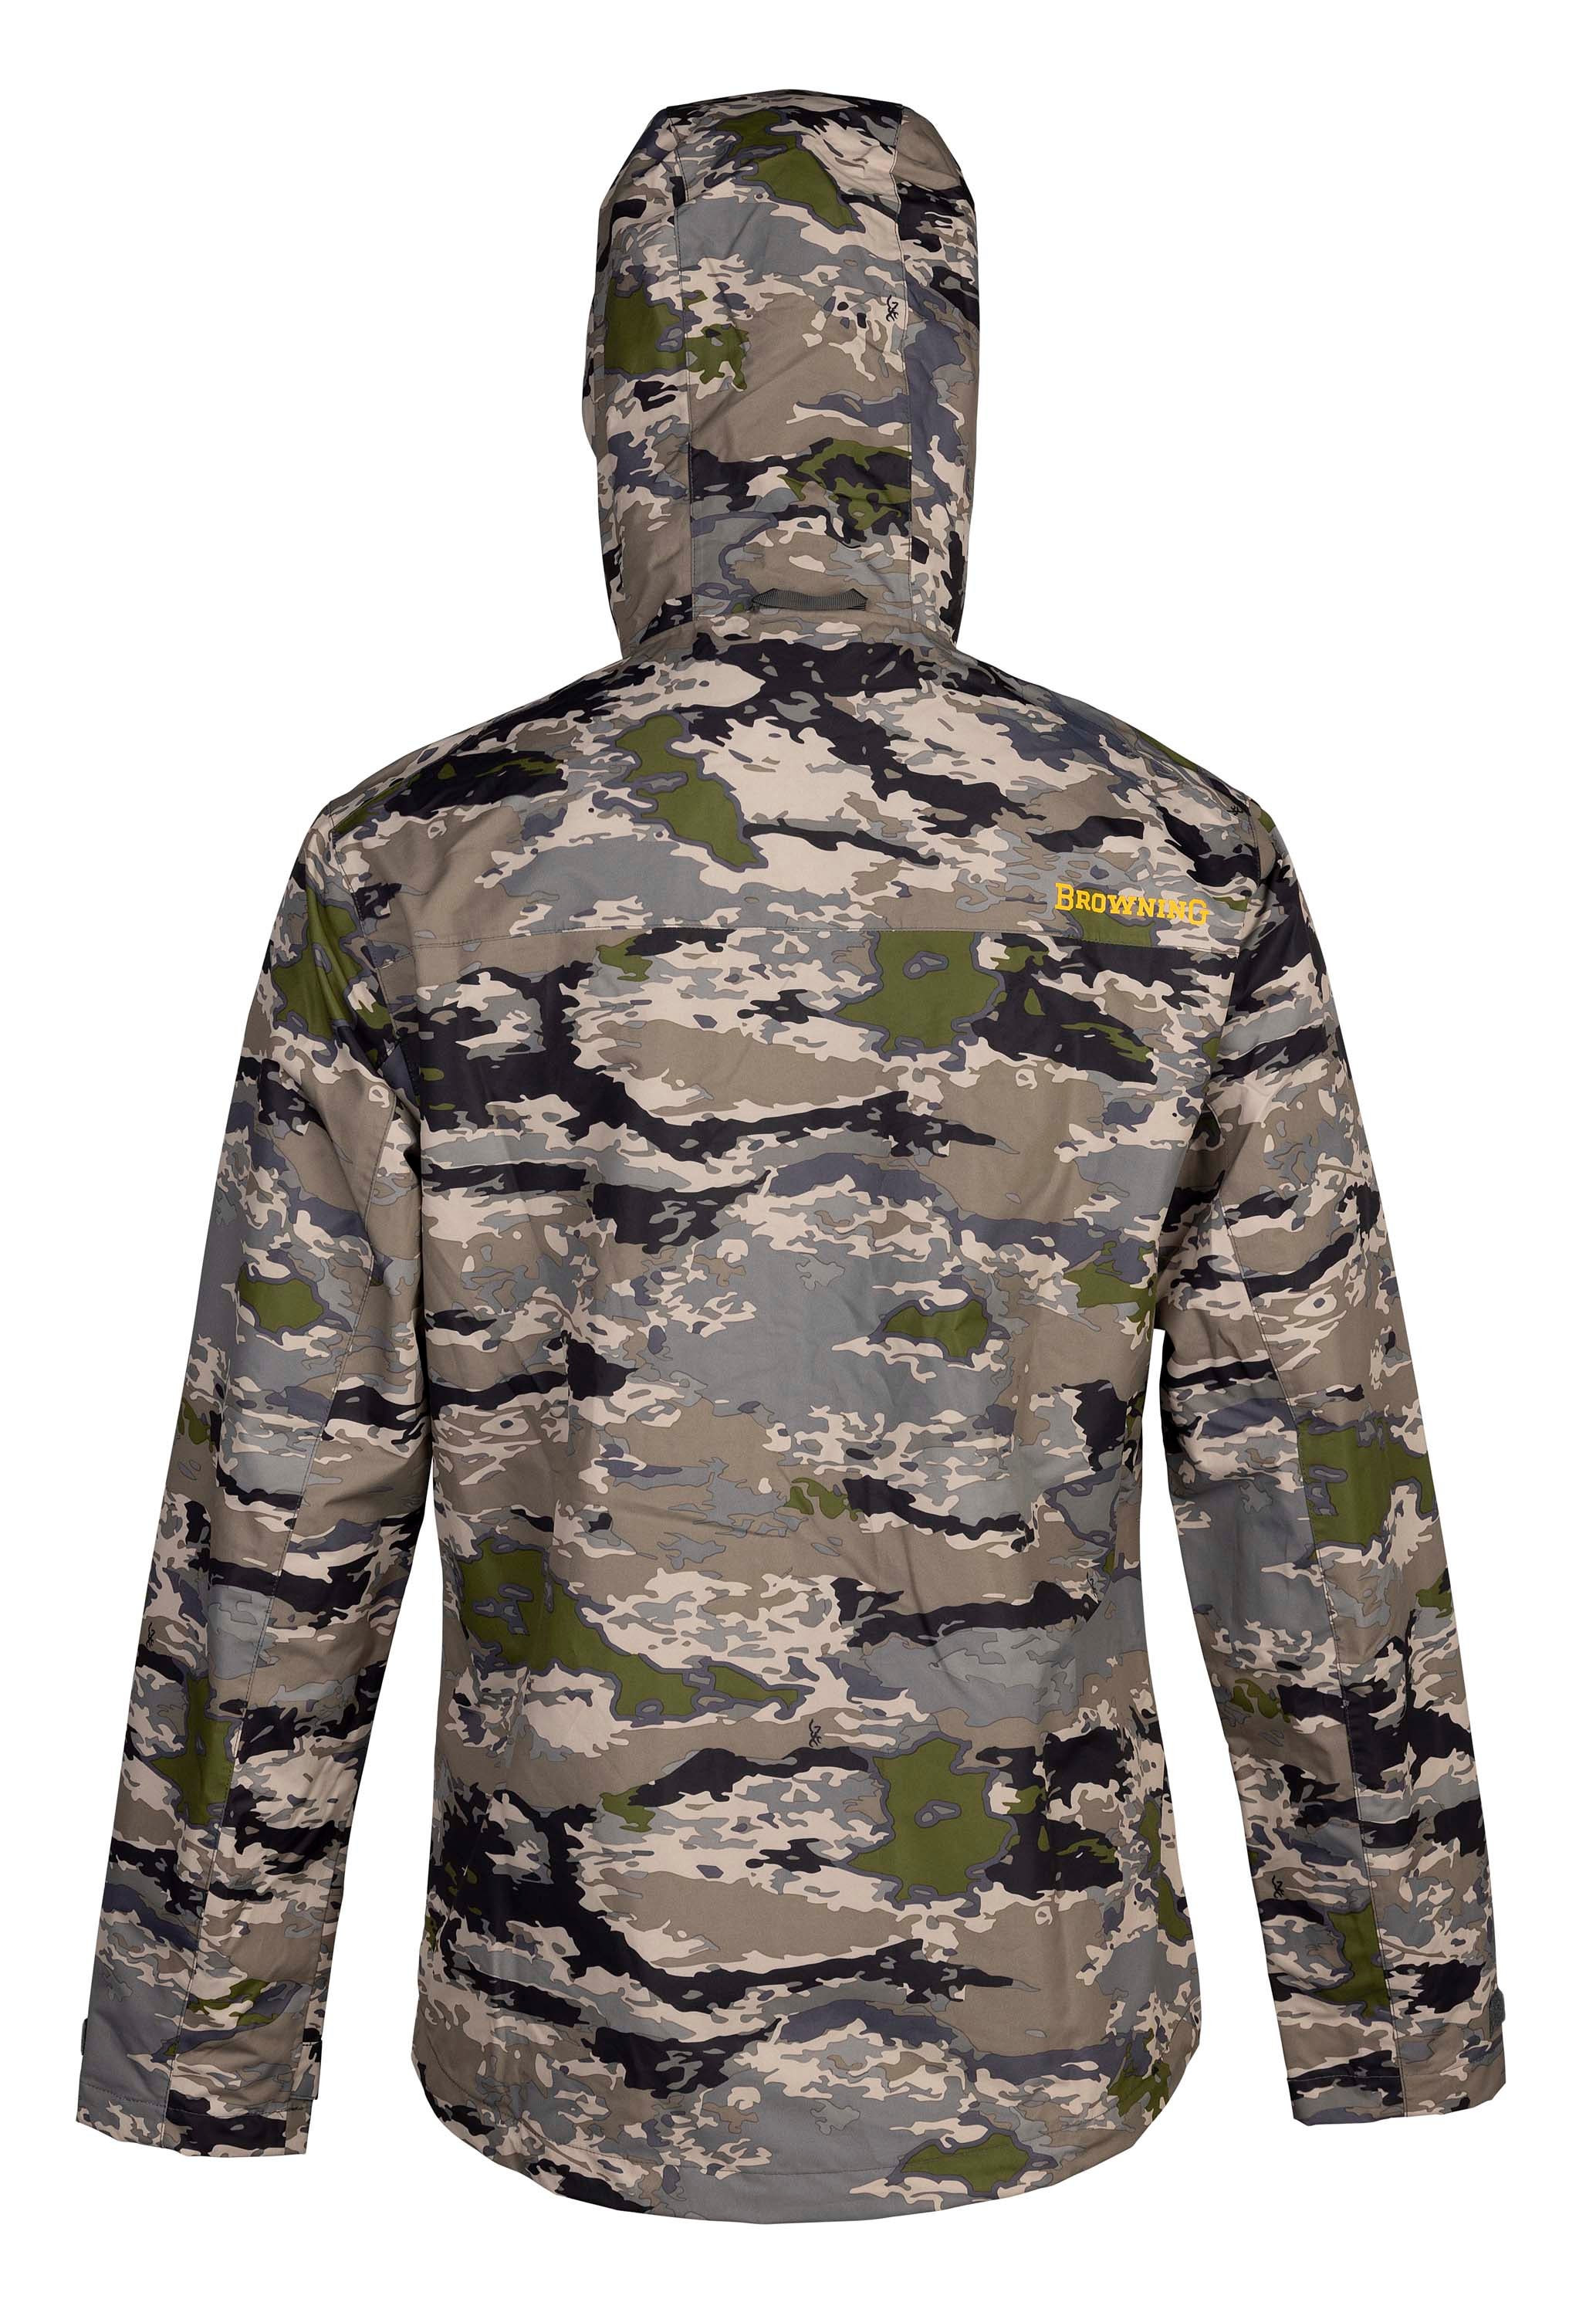 Kanawha Rain Jacket - Hunting Clothing - Browning